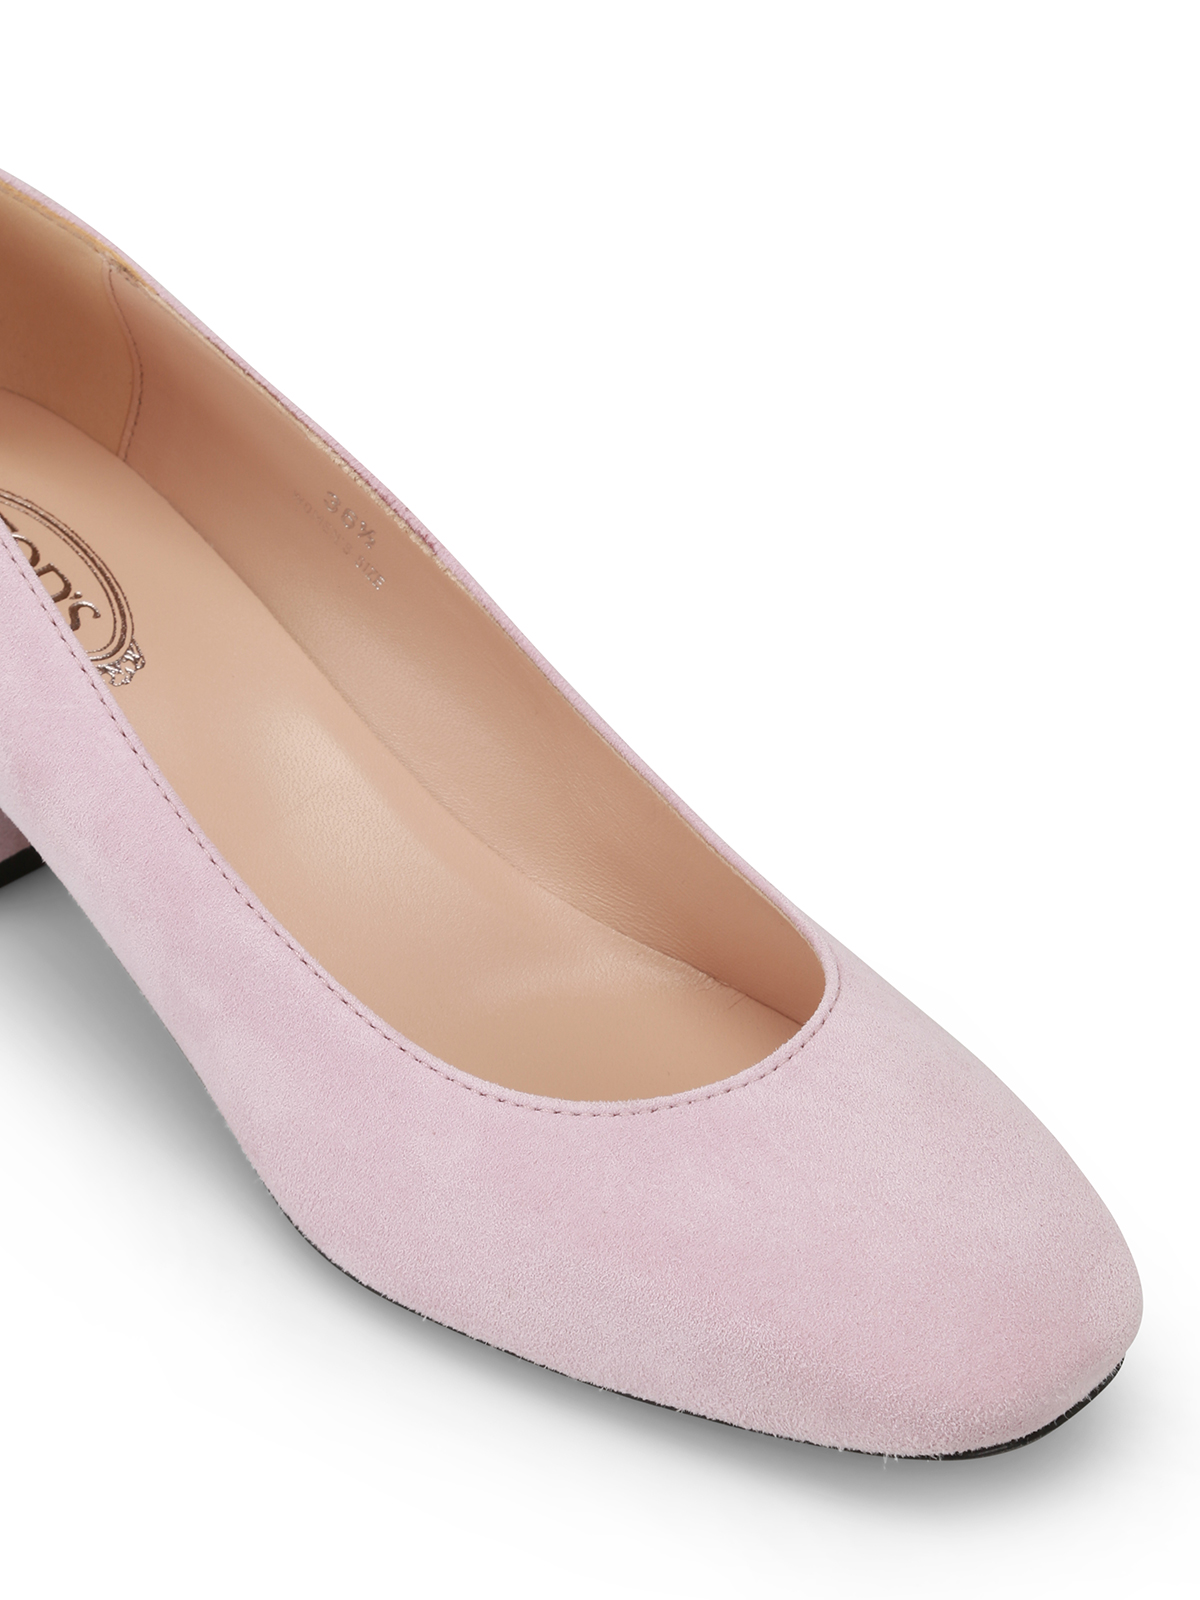 pink suede heel